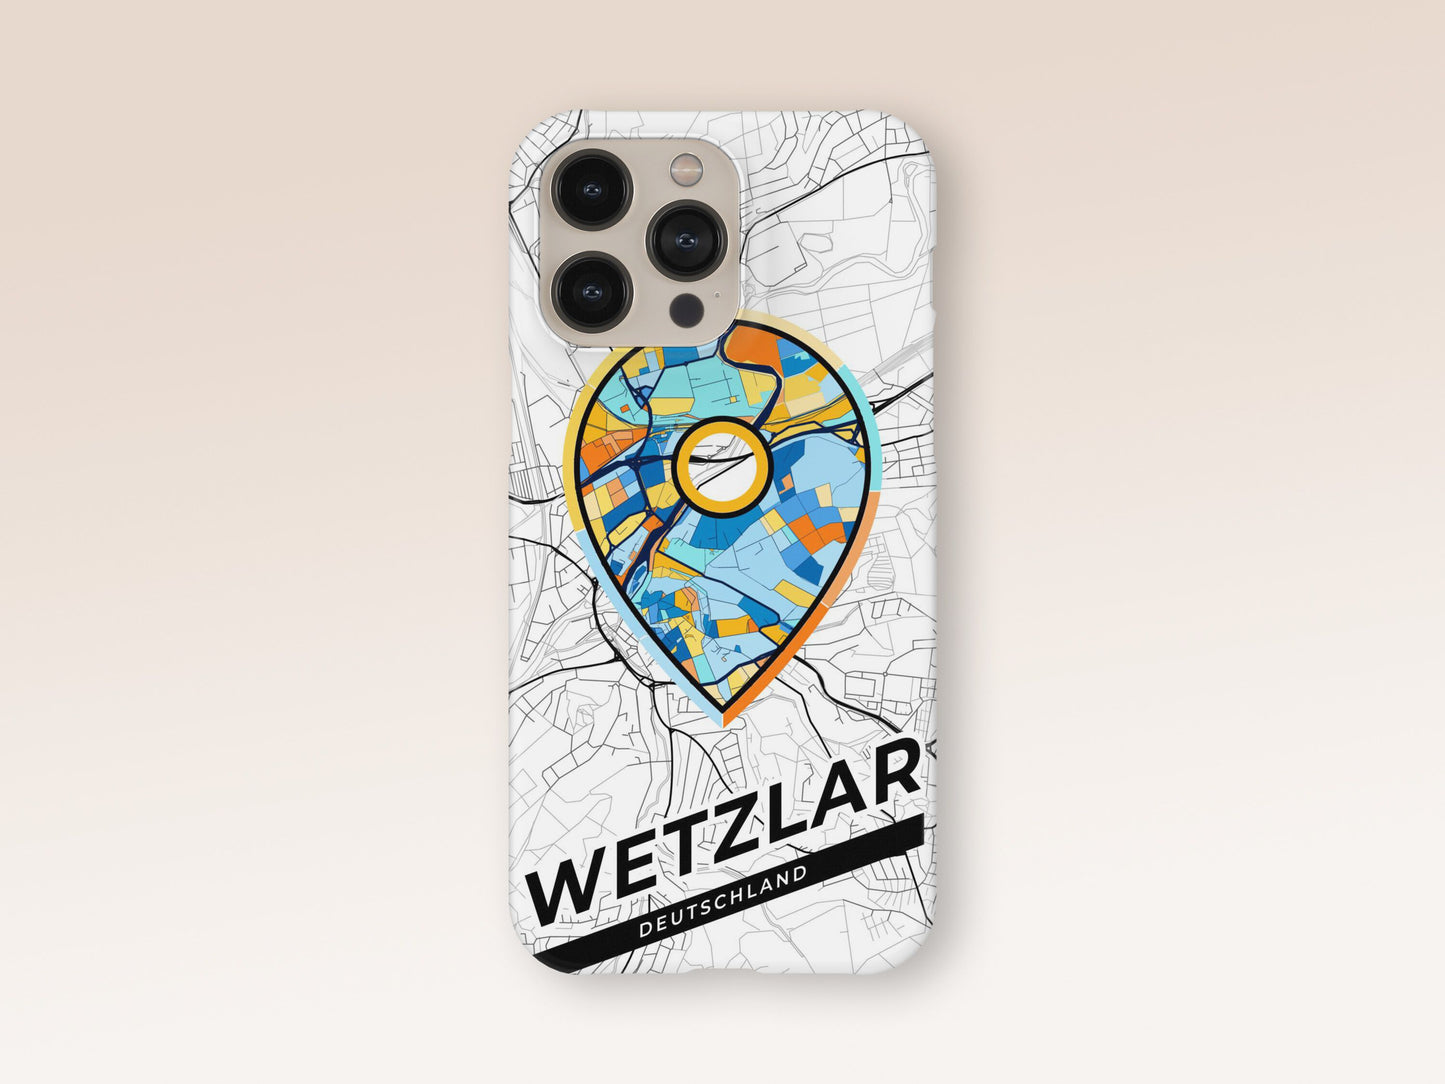 Wetzlar Deutschland slim phone case with colorful icon 1